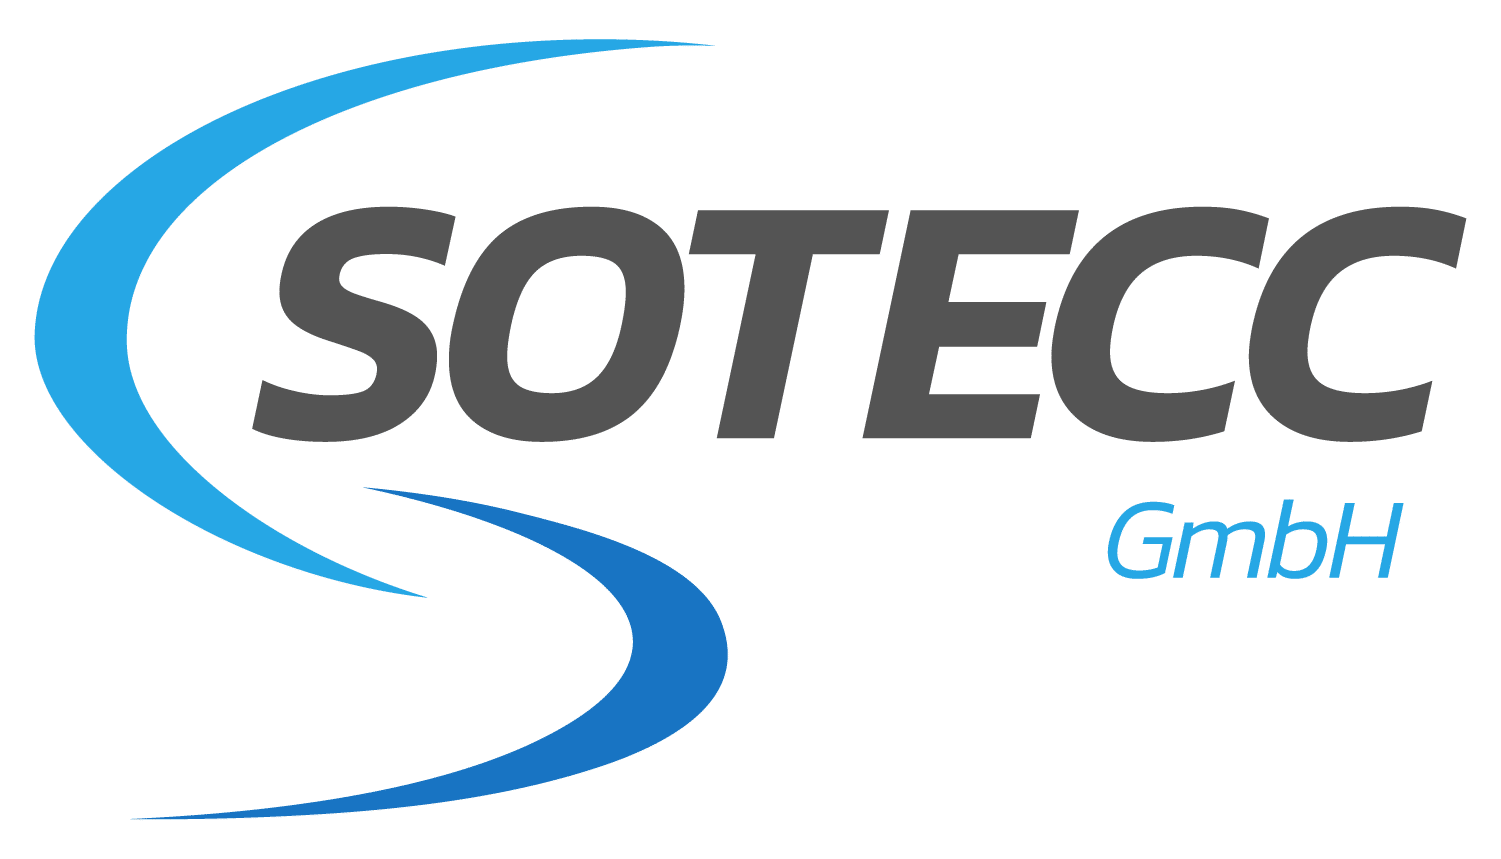 SOTECC-GmbH-02042020